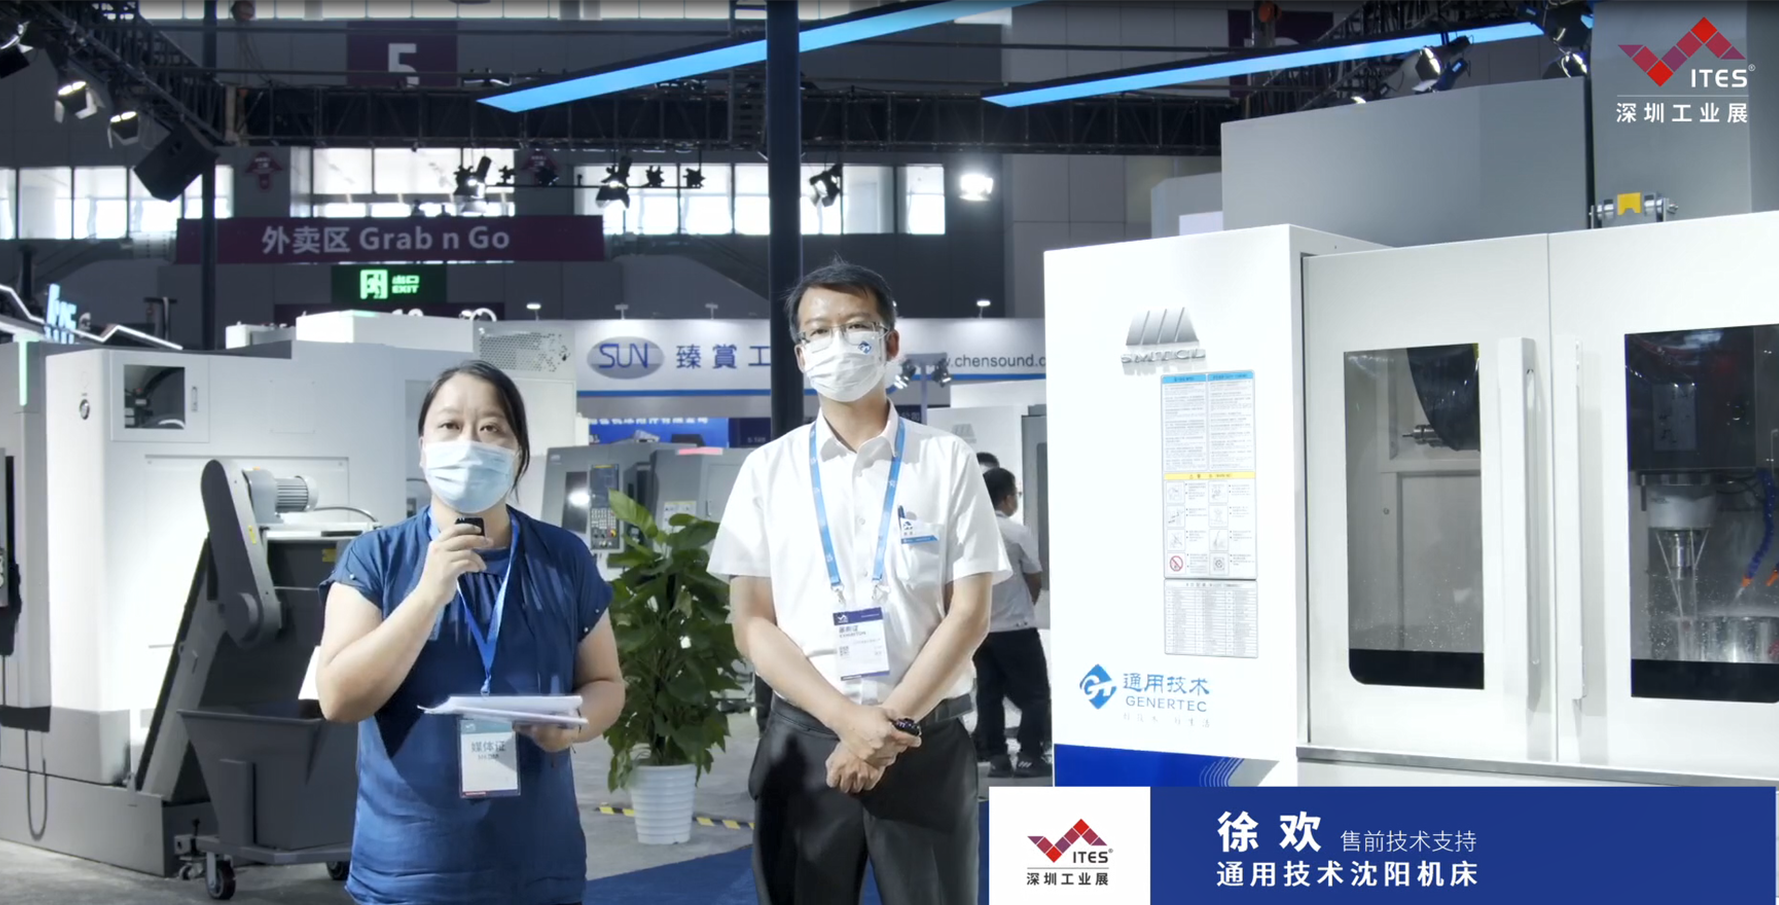 沈阳机床在2022 ITES深圳工业展现场带来GMC2040RV龙门式数控镗铣床、VMC850Q立式加工中心等，让我们一起洞悉工业技术新趋势。